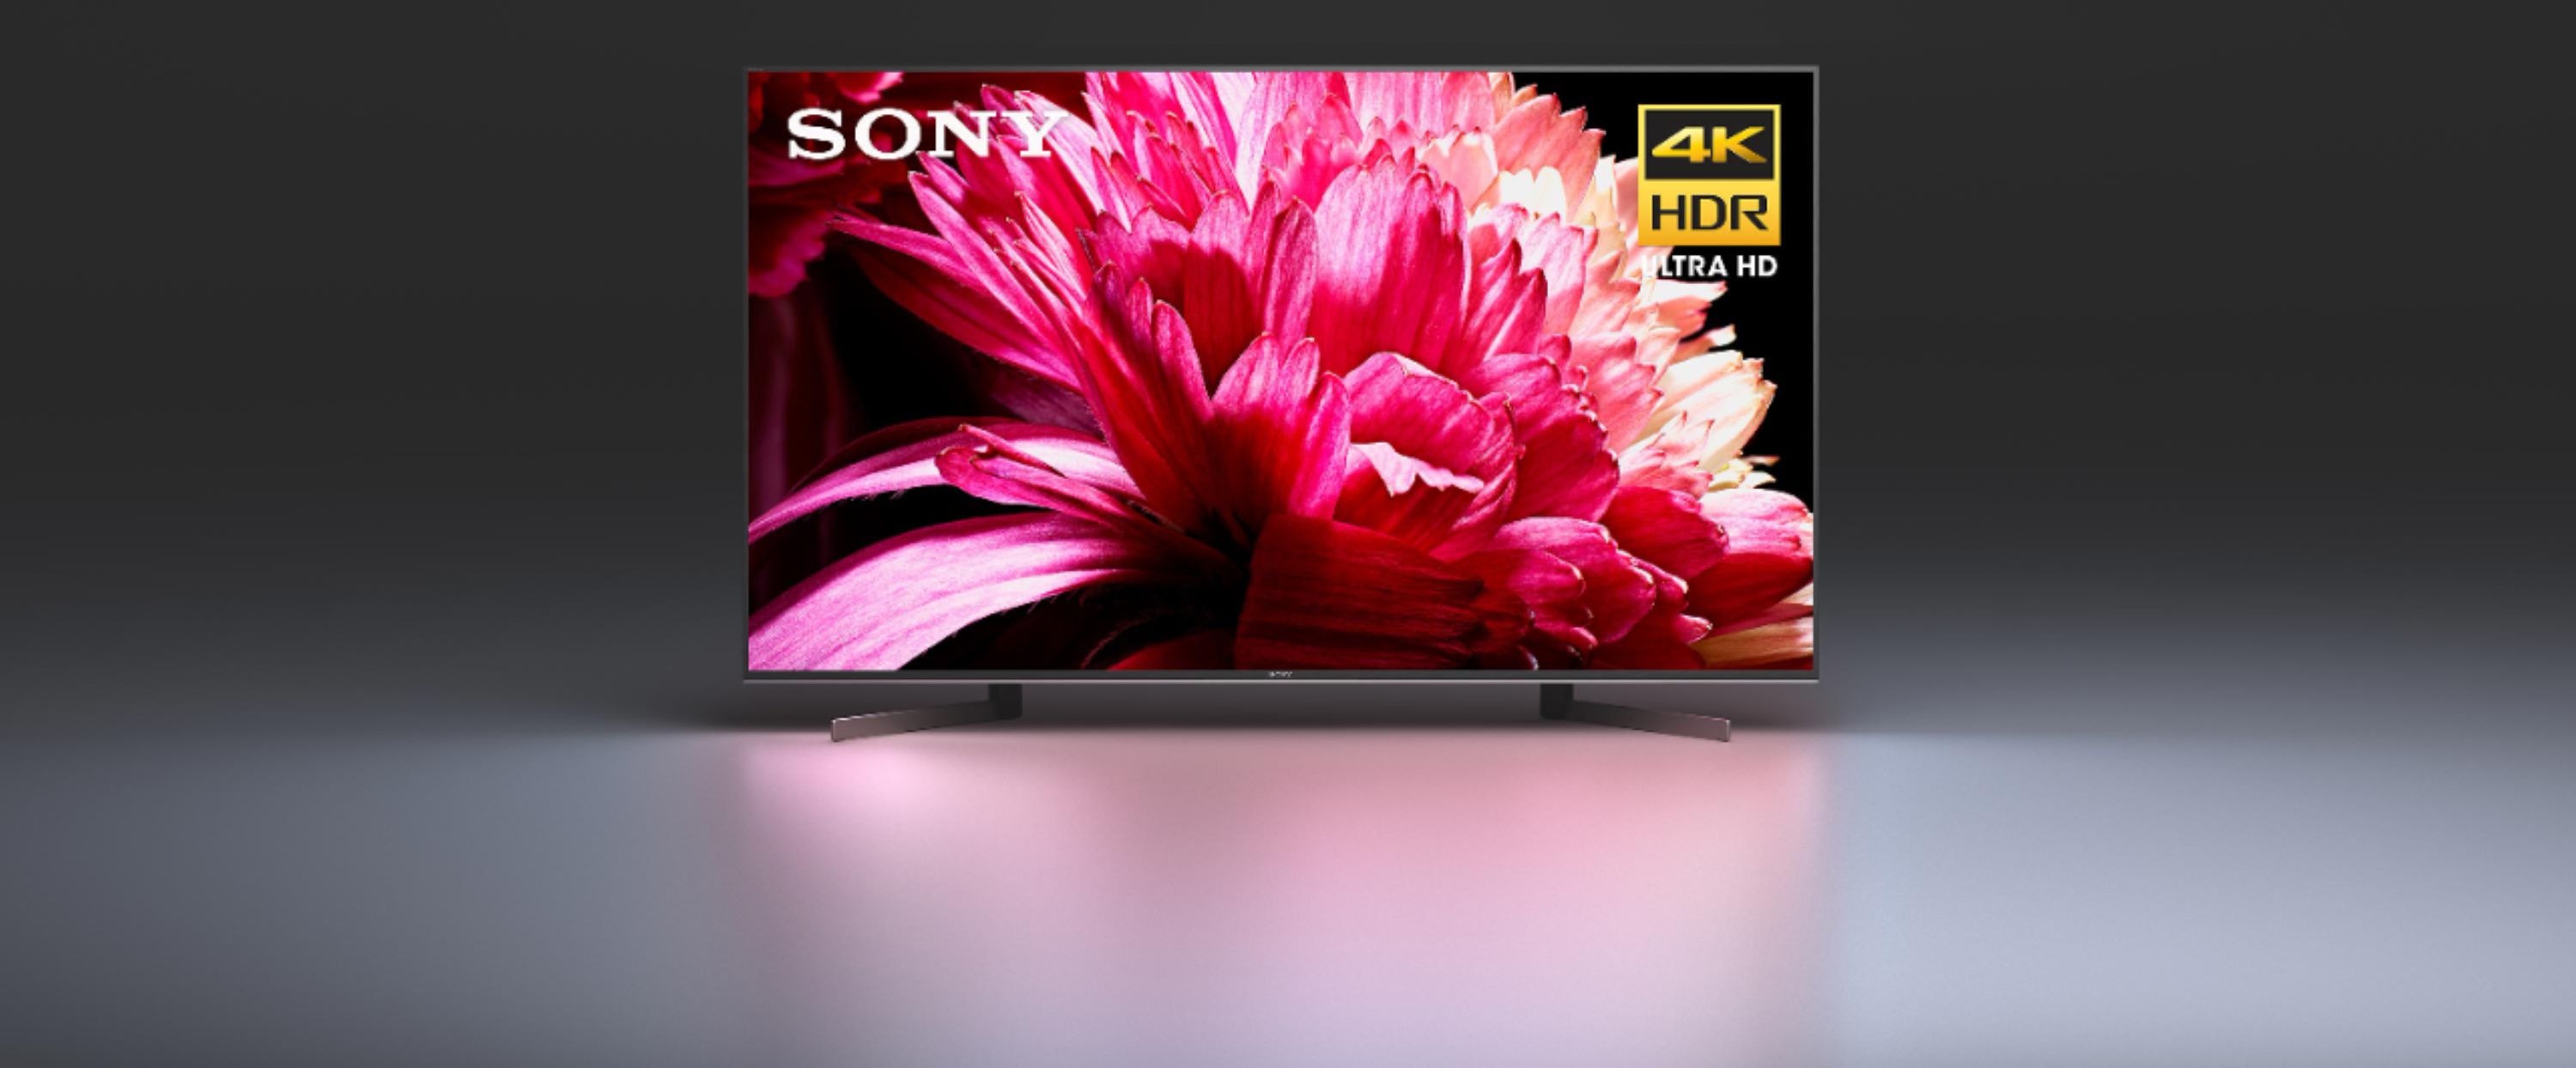 38+ Sony x950g 43 inch 4k uhd smart led tv ideas in 2021 